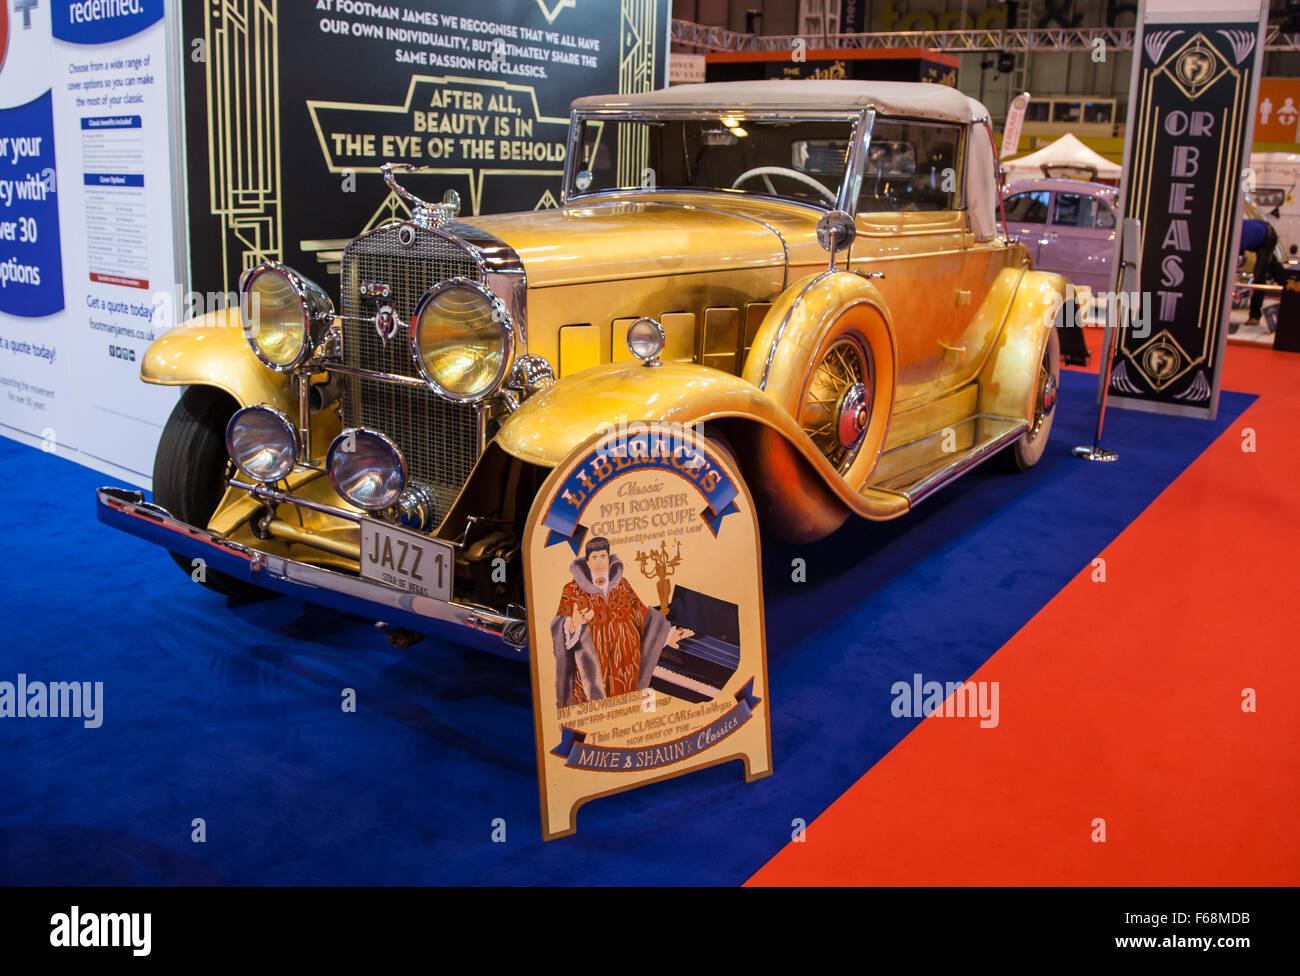 Birmingham, UK. 14 novembre, 2015. Lancaster Classic Car Show à NEC de Birmingham Crédit : Steven re/Alamy Live News Banque D'Images